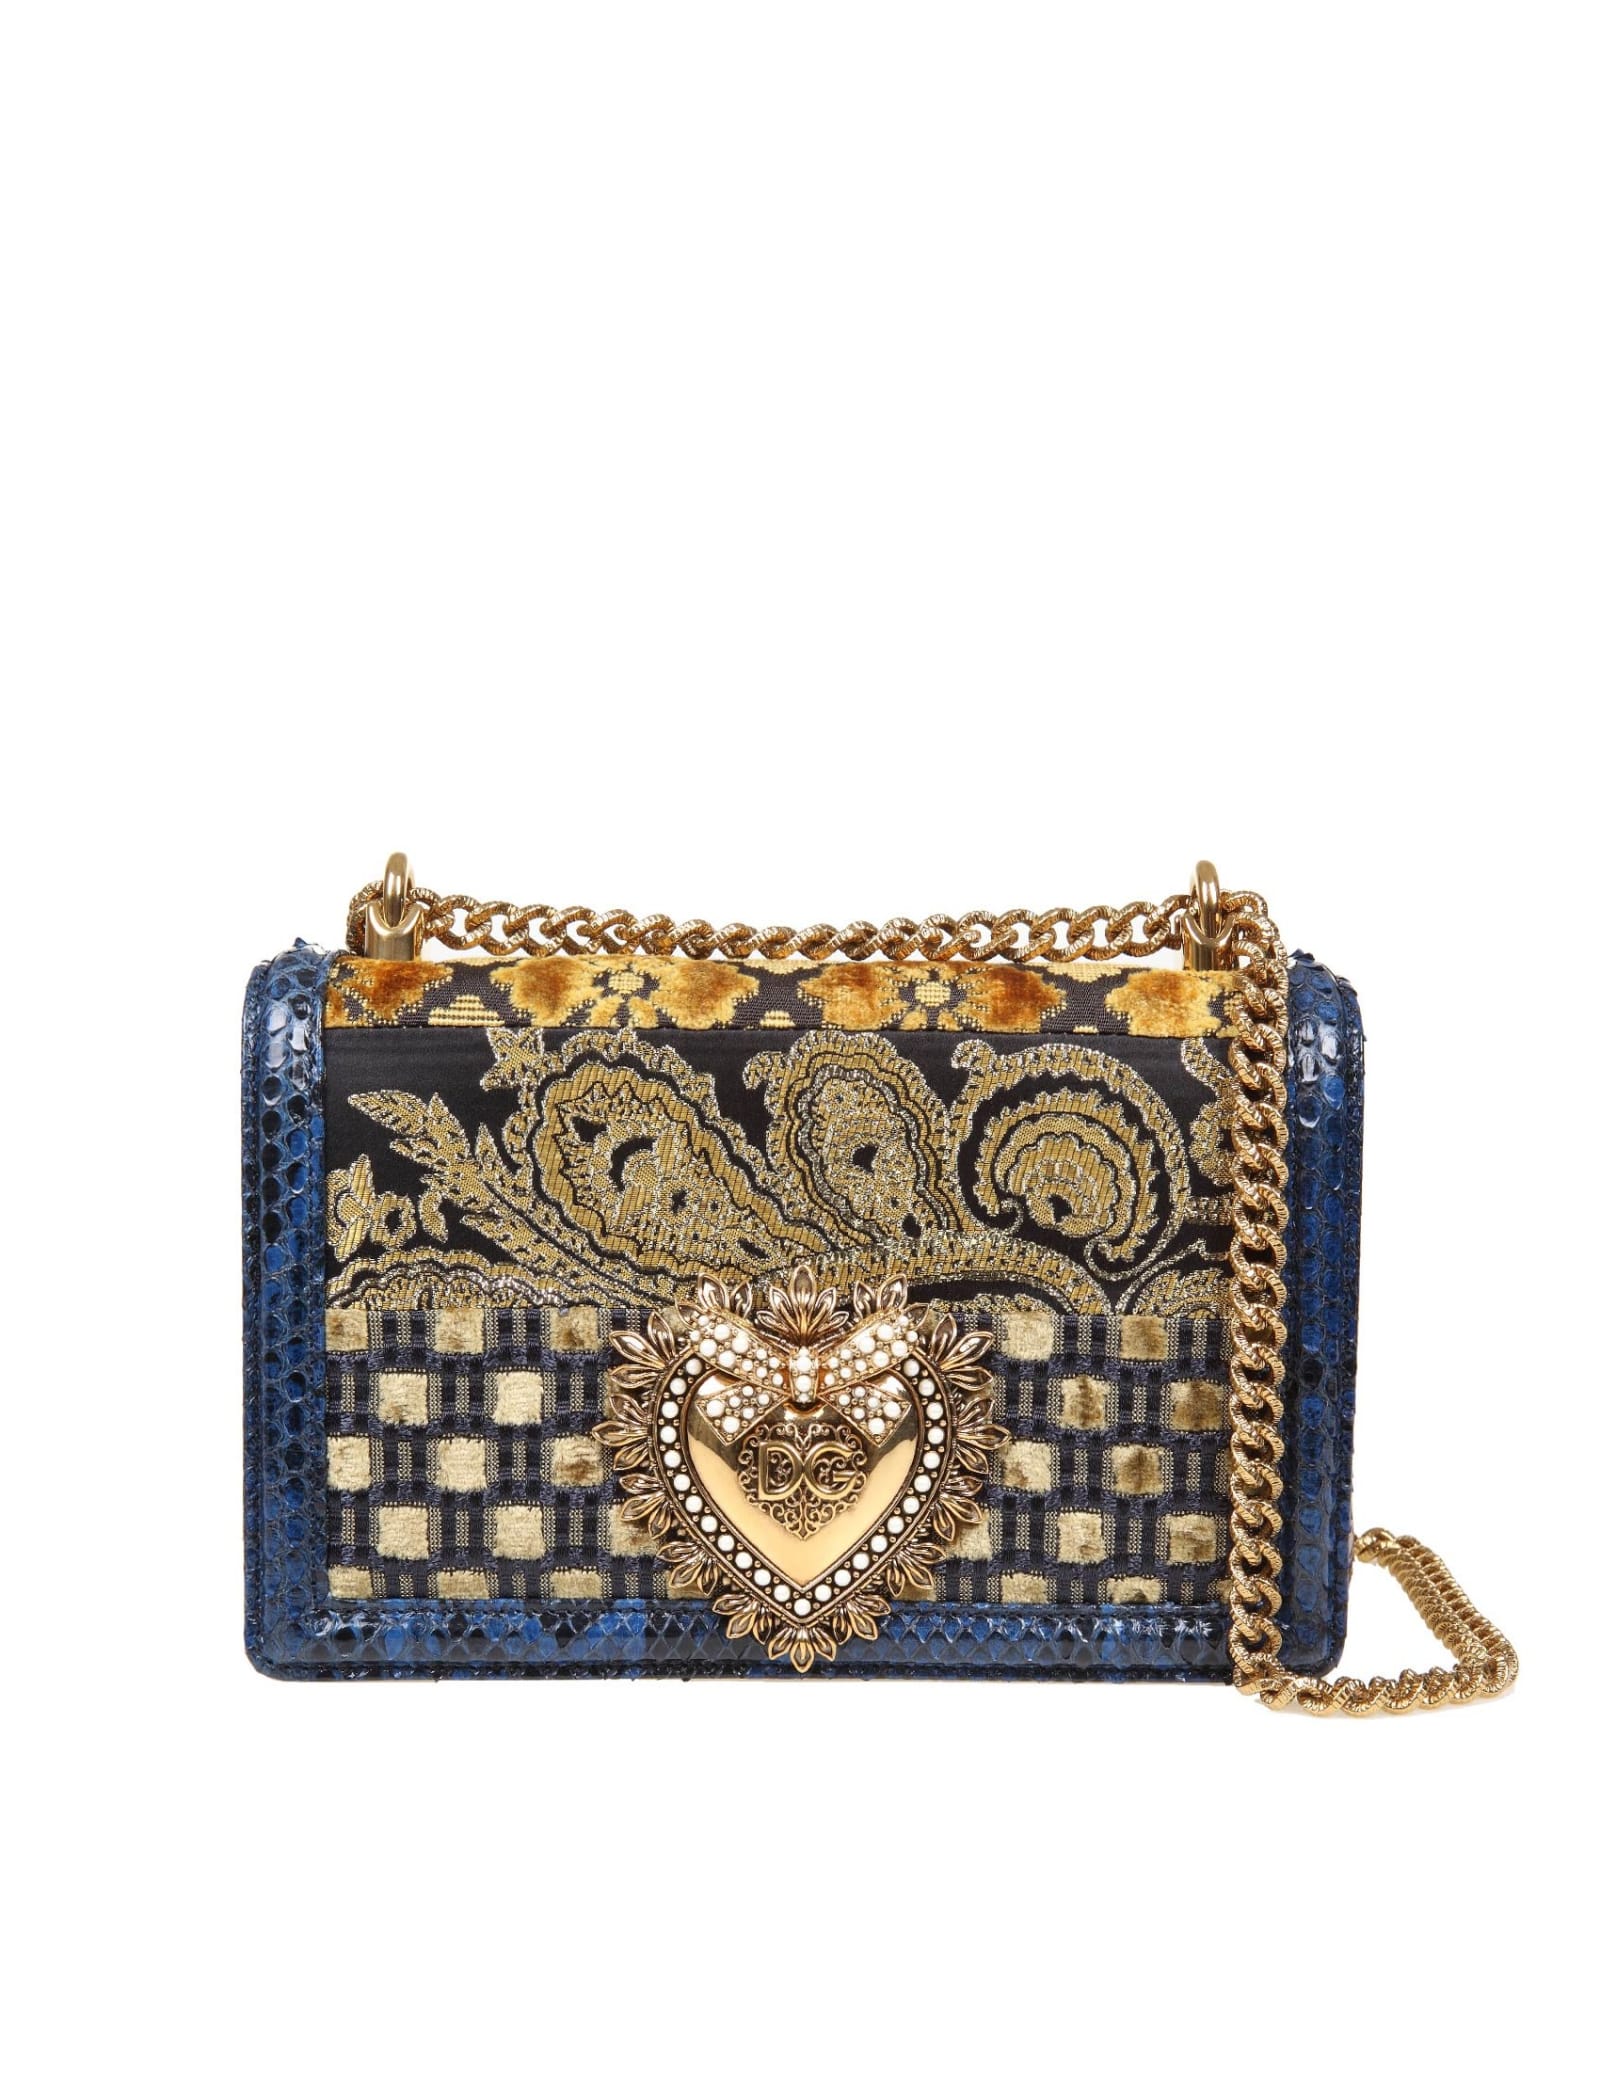 Dolce & Gabbana Devotion Patchwork Shoulder Bag